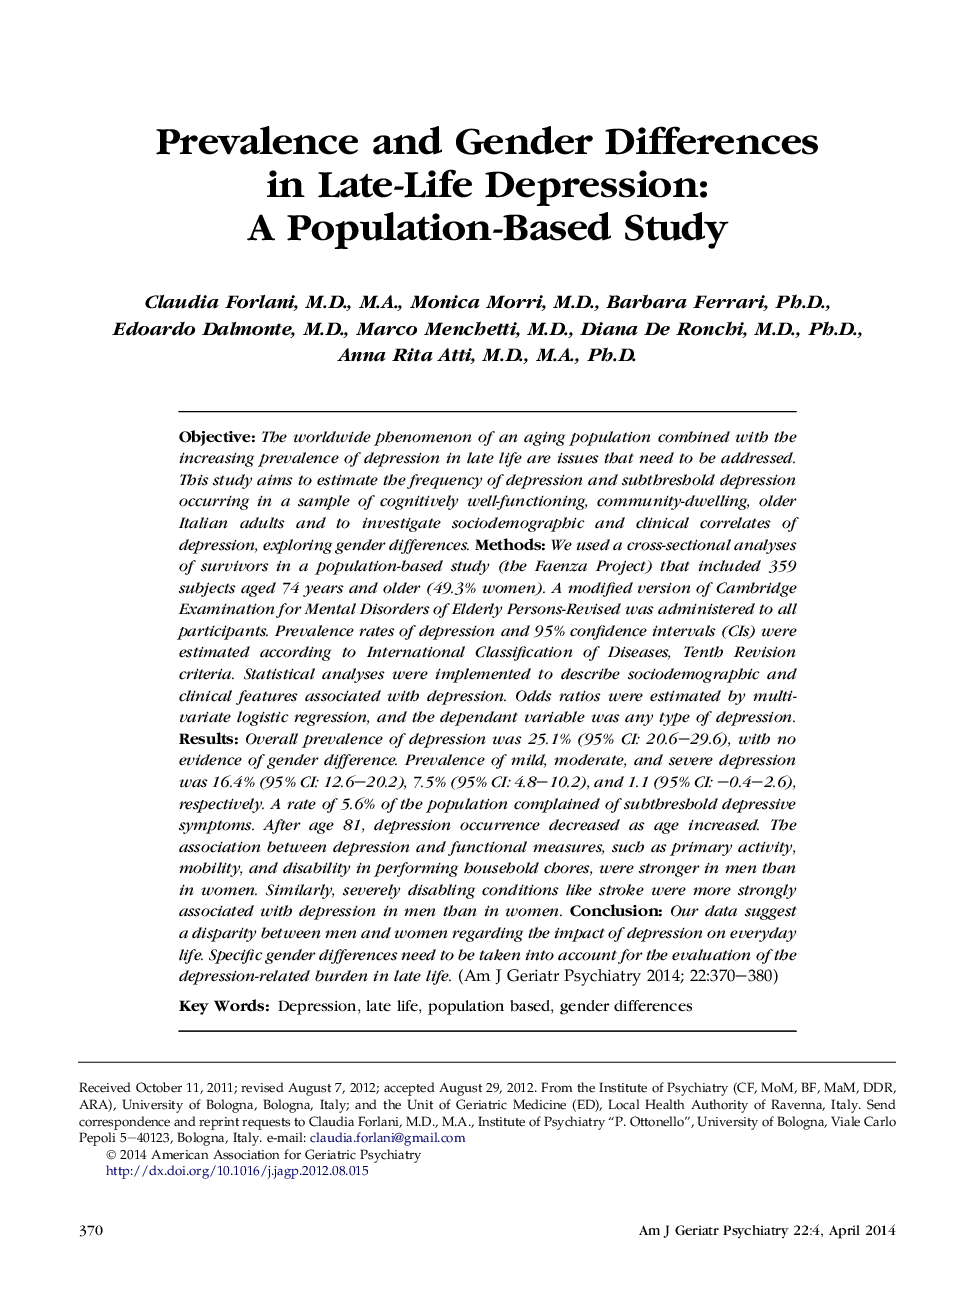 شیوع و تفاوت جنسیتی در افسردگی پس از زایمان: یک مطالعه مبتنی بر جمعیت 